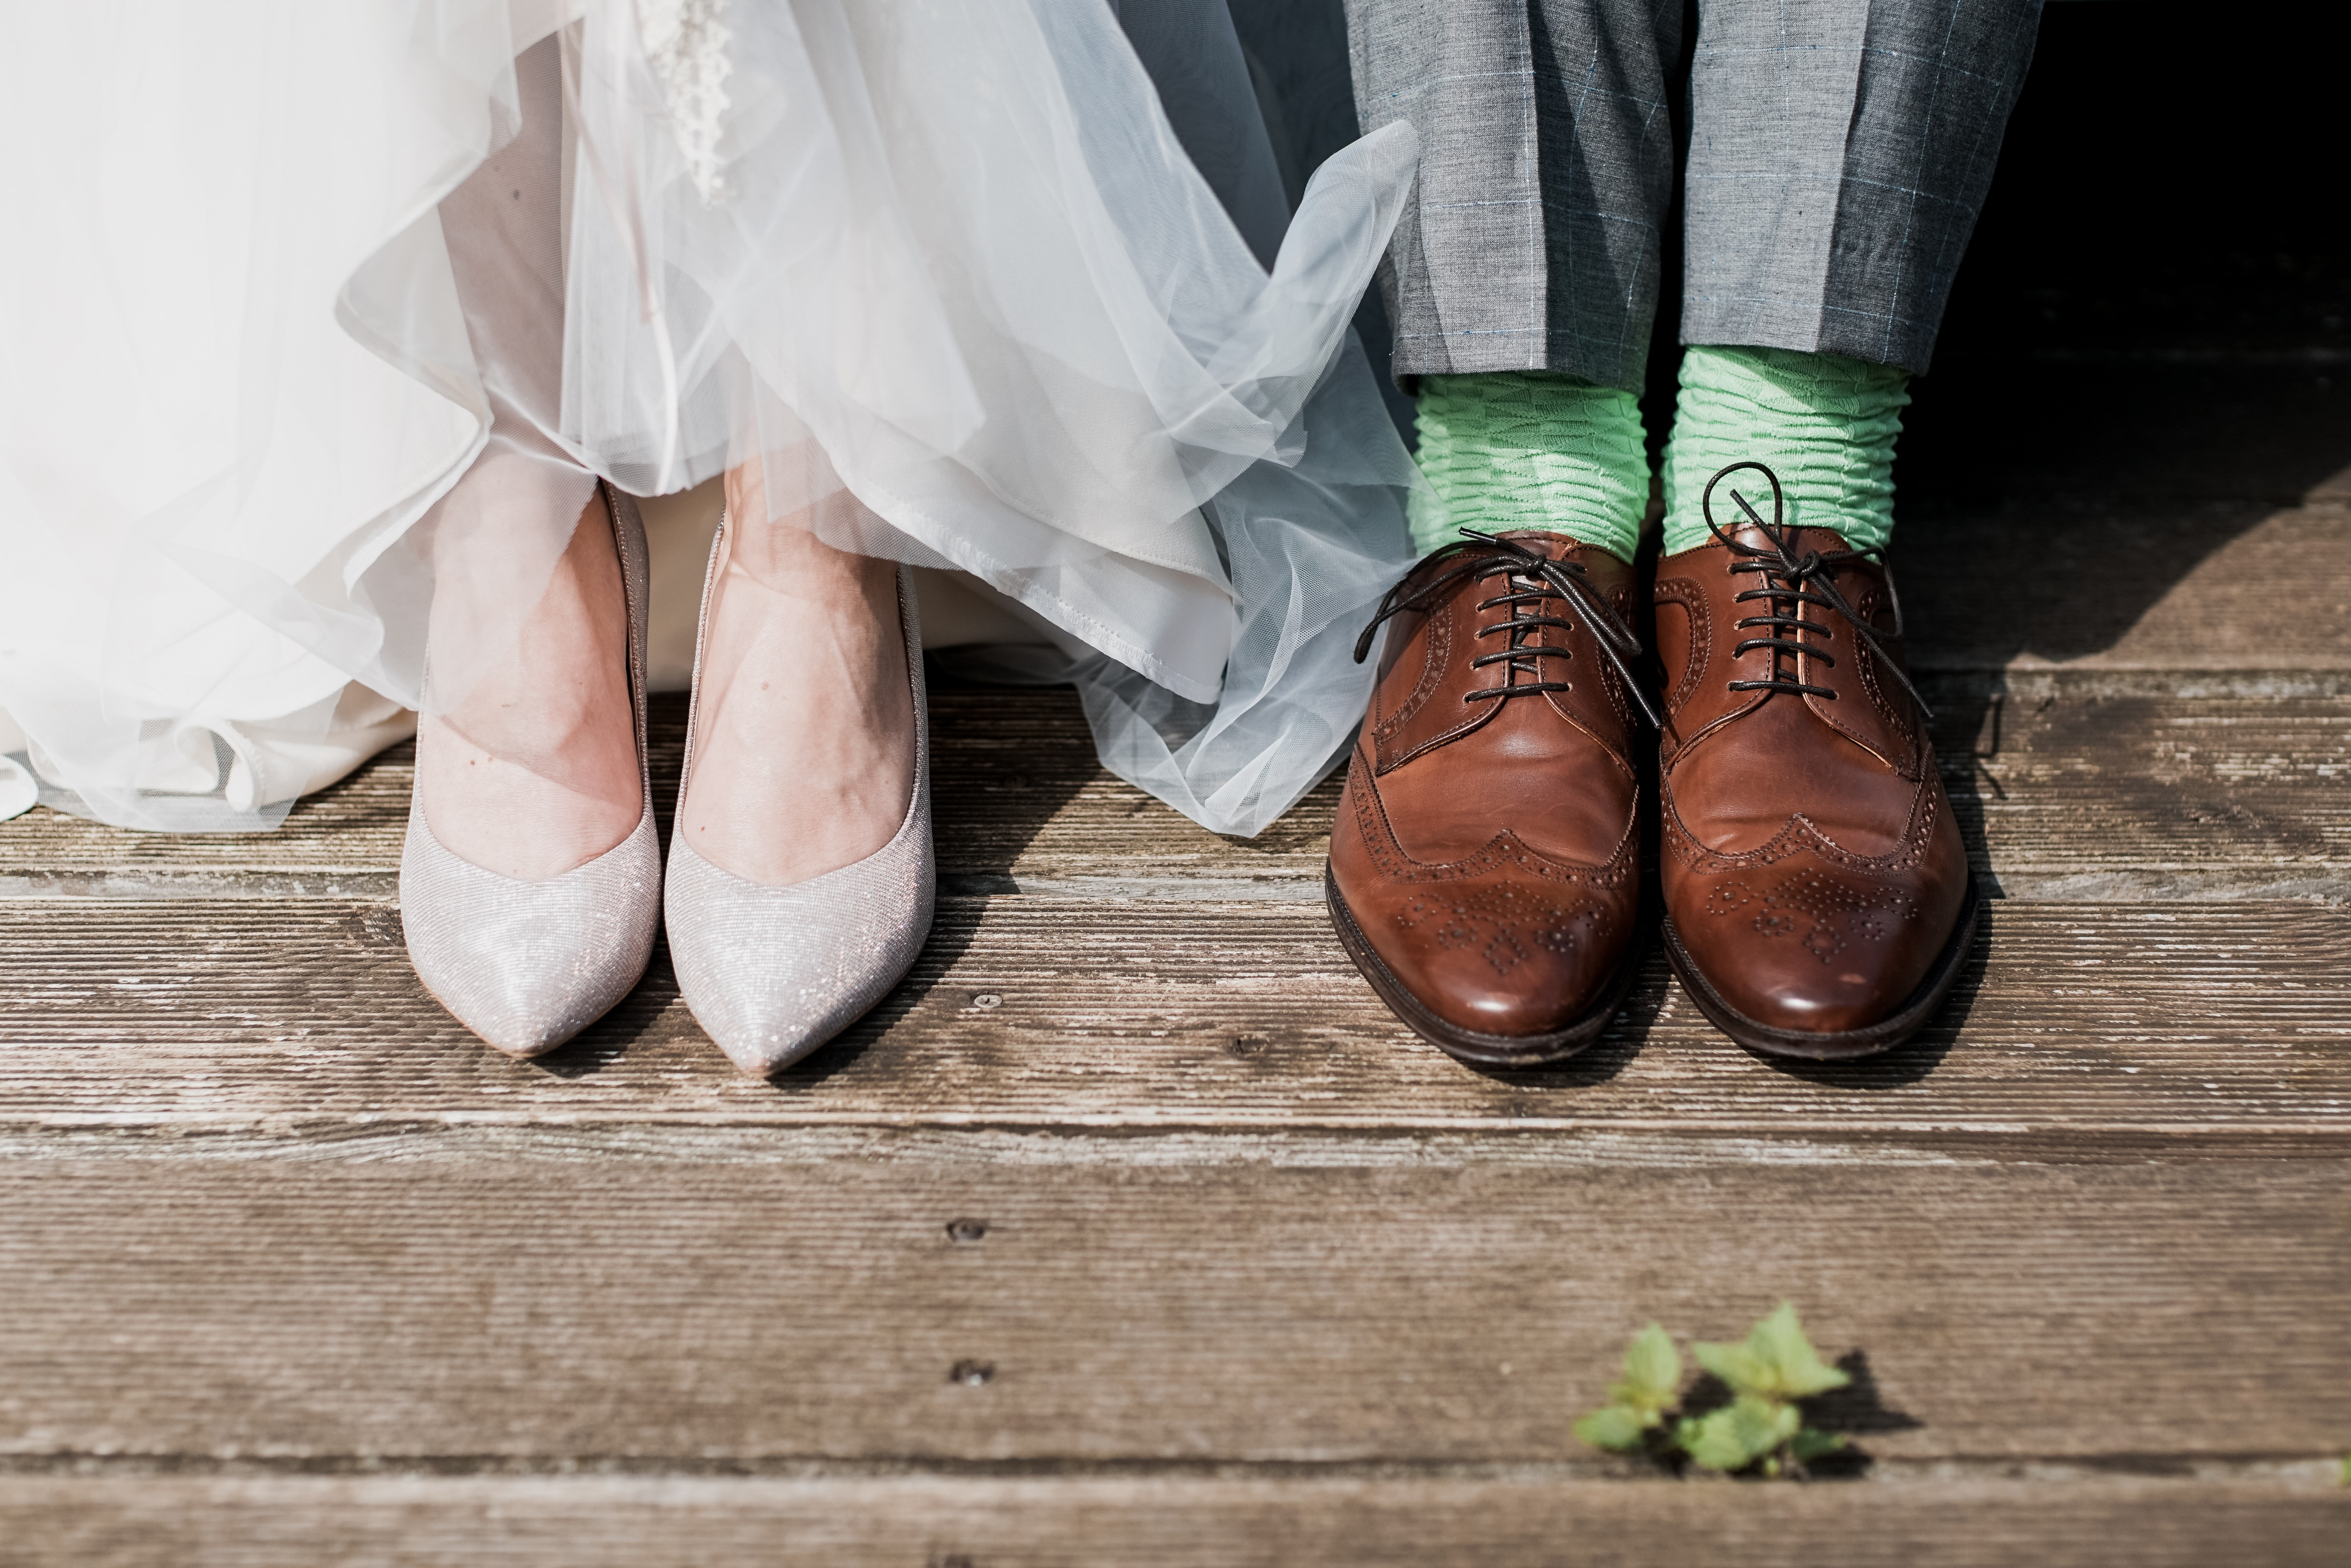 Свадьба в стиле Рустик 2021: оформление, одежда гостей, платье невесты